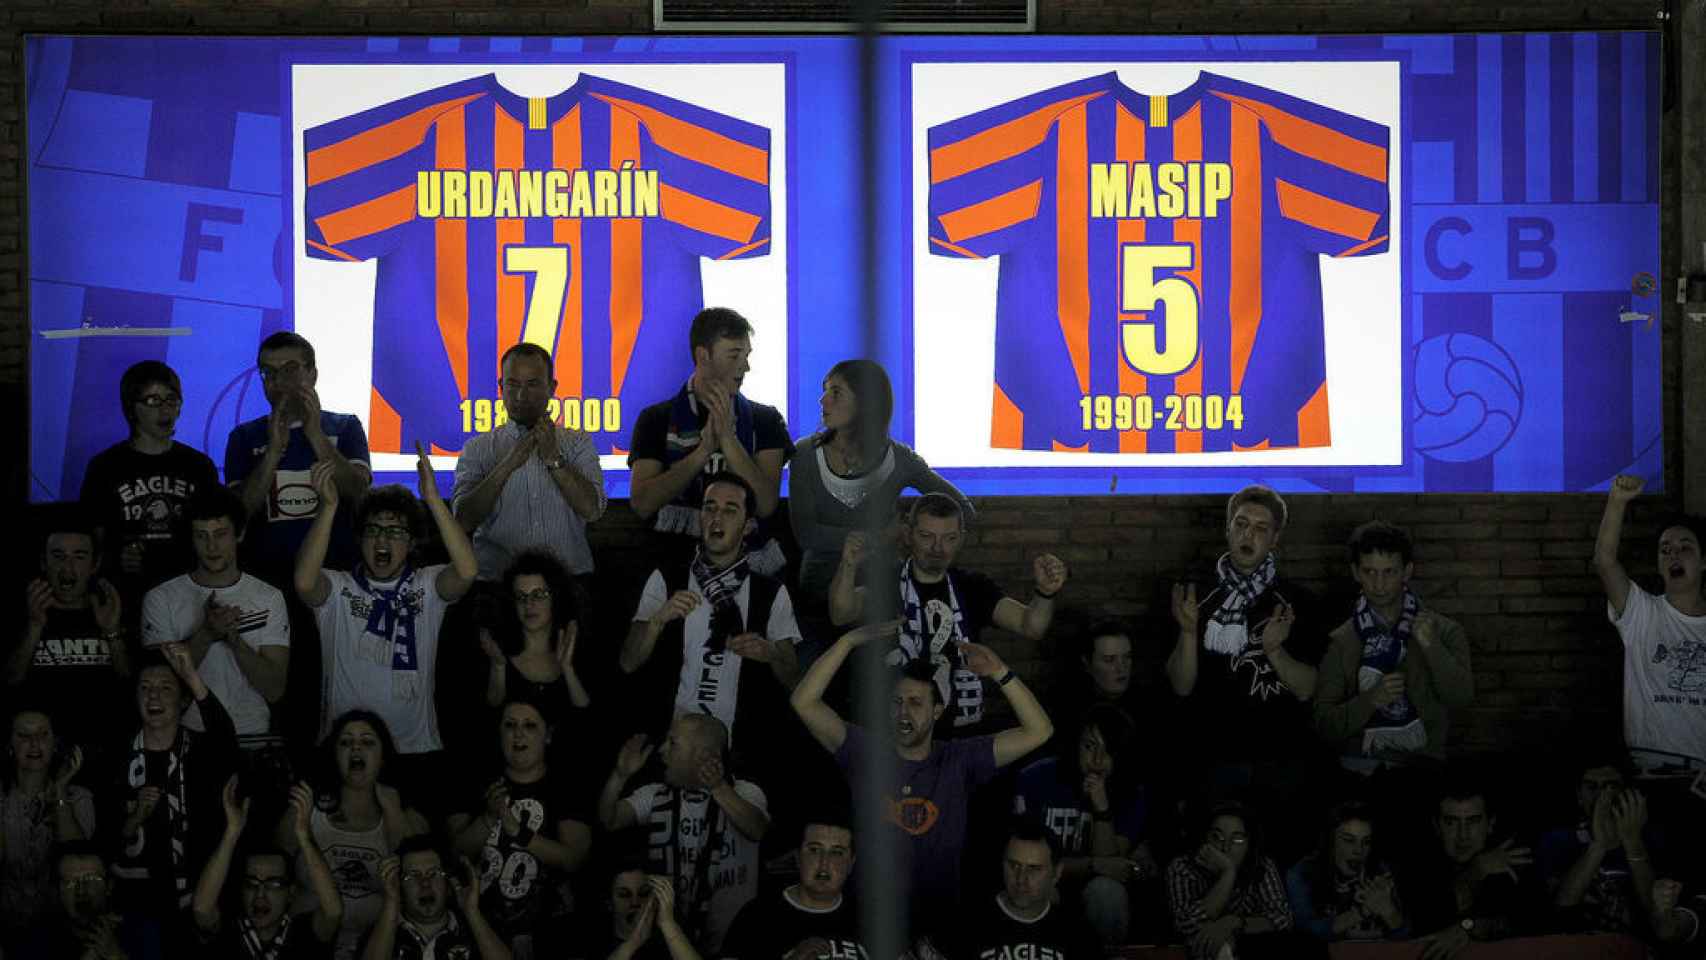 El FC Barcelona no descolgará del Palau la camiseta de Urdangarin pese a su condena